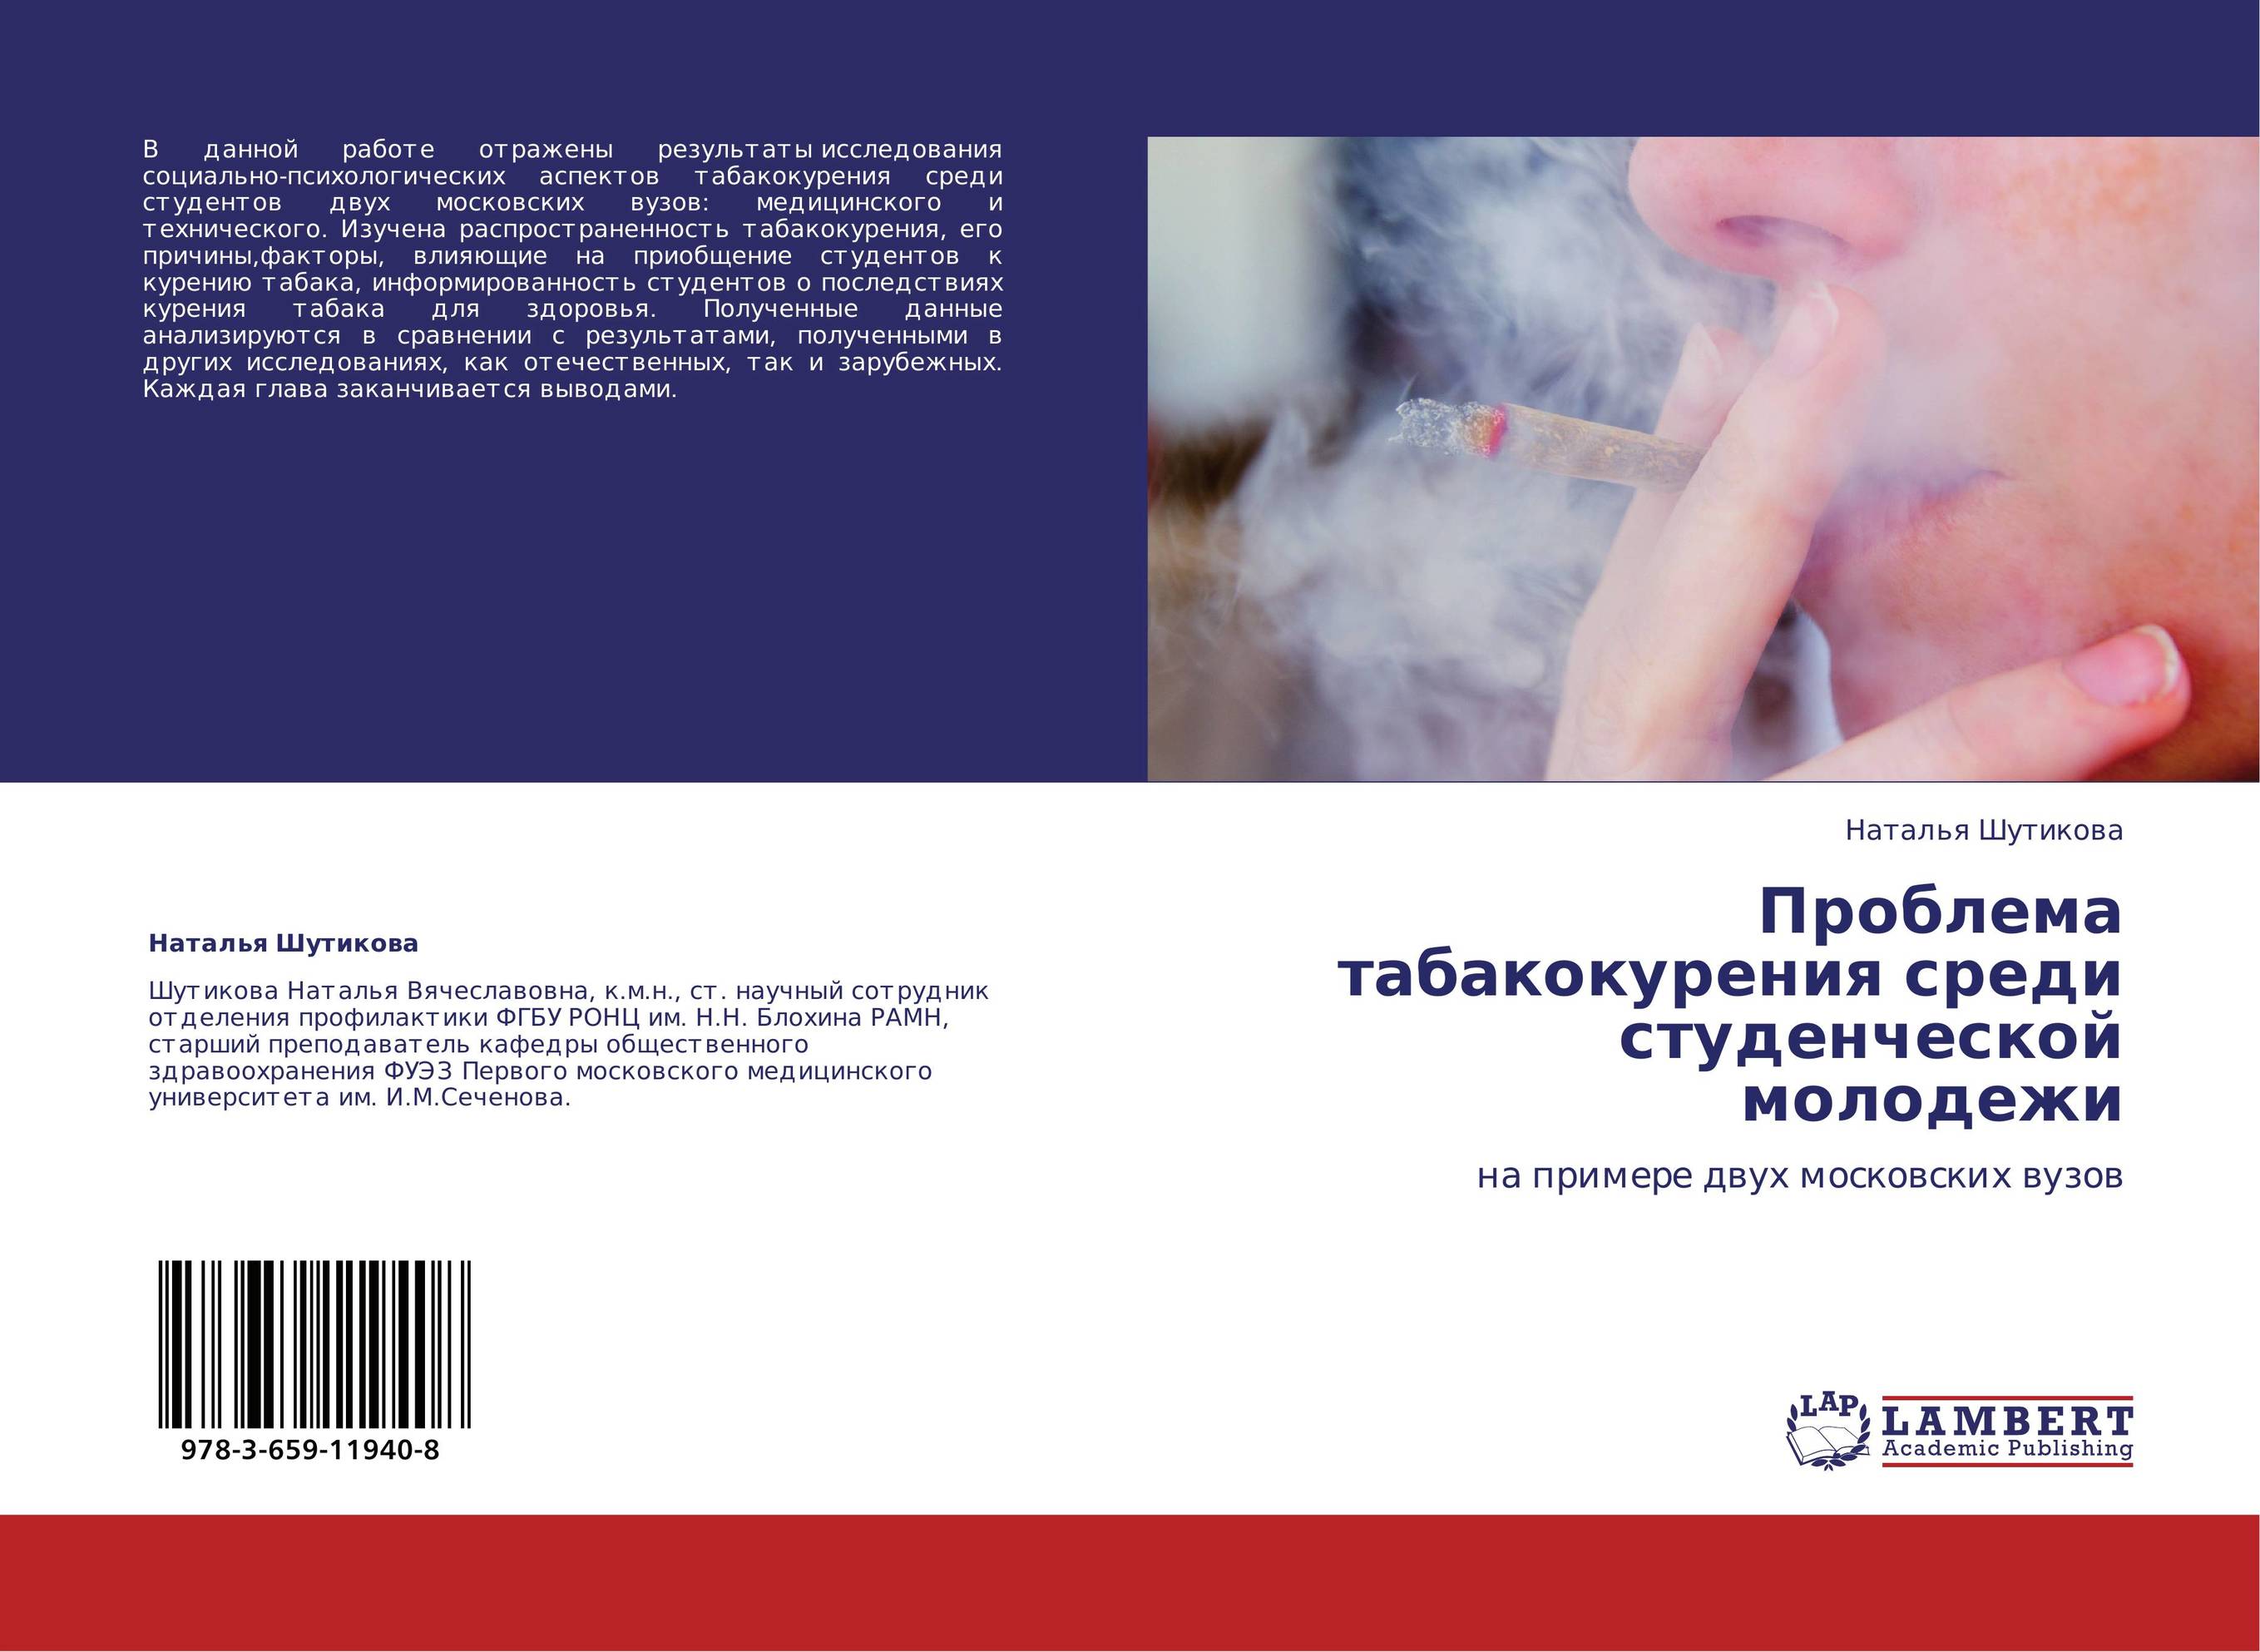 
        Проблема табакокурения среди студенческой молодежи. На примере двух московских вузов.
      